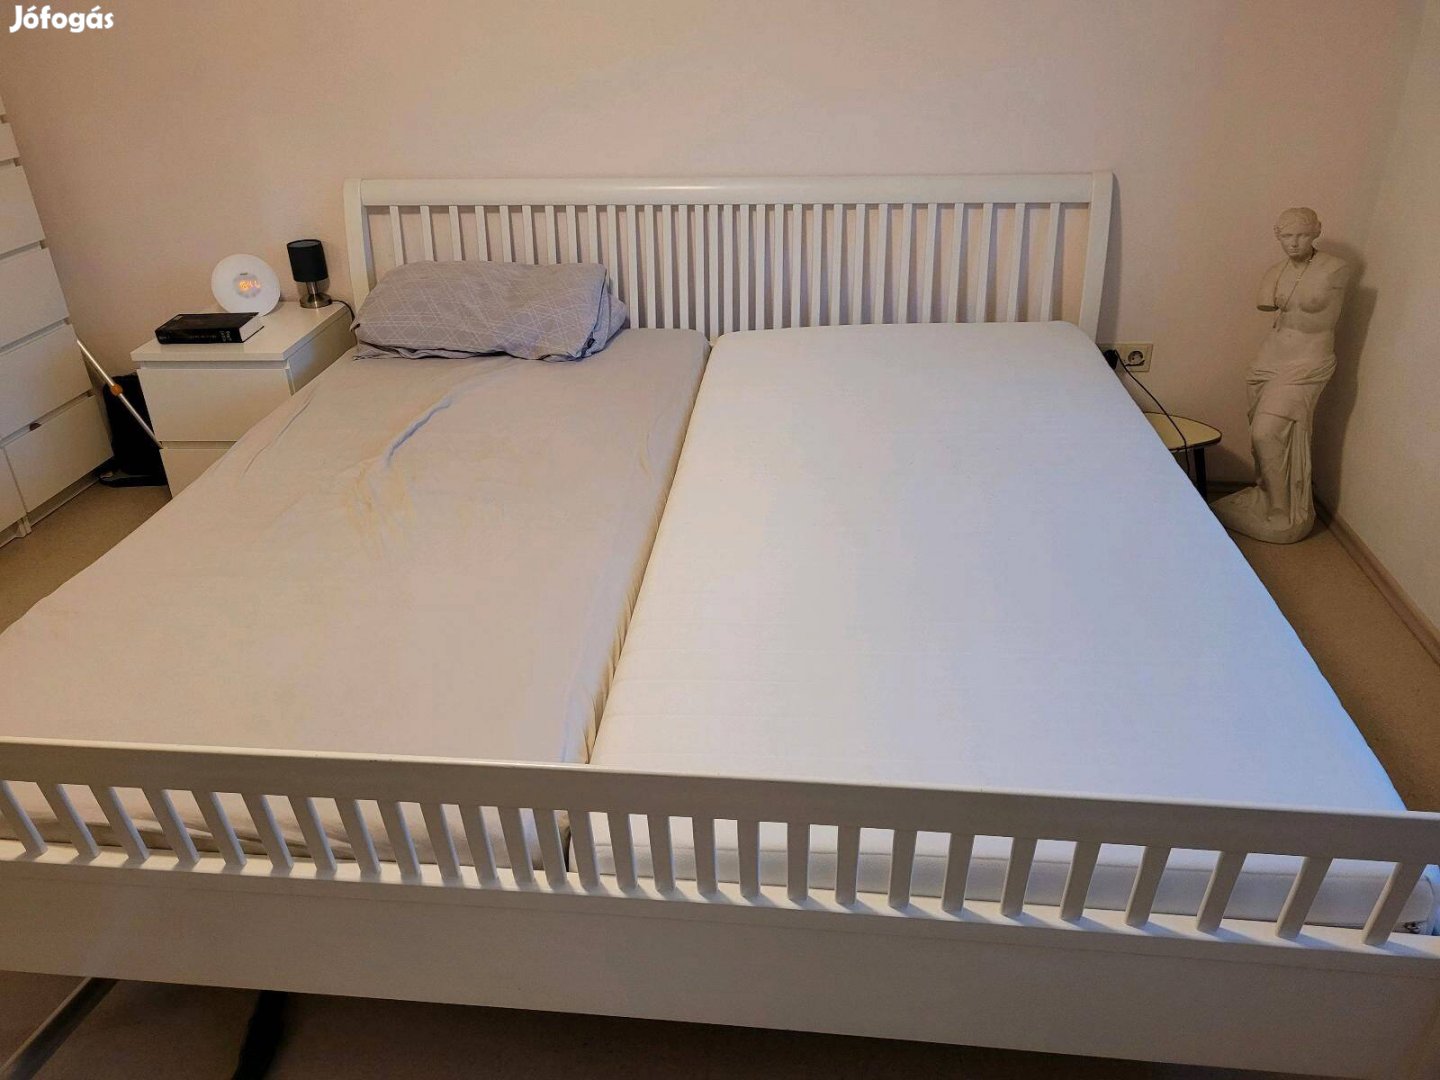 Ikea franciaágy 2m x 2m komplett, ágyrácsokkal,matracokkal